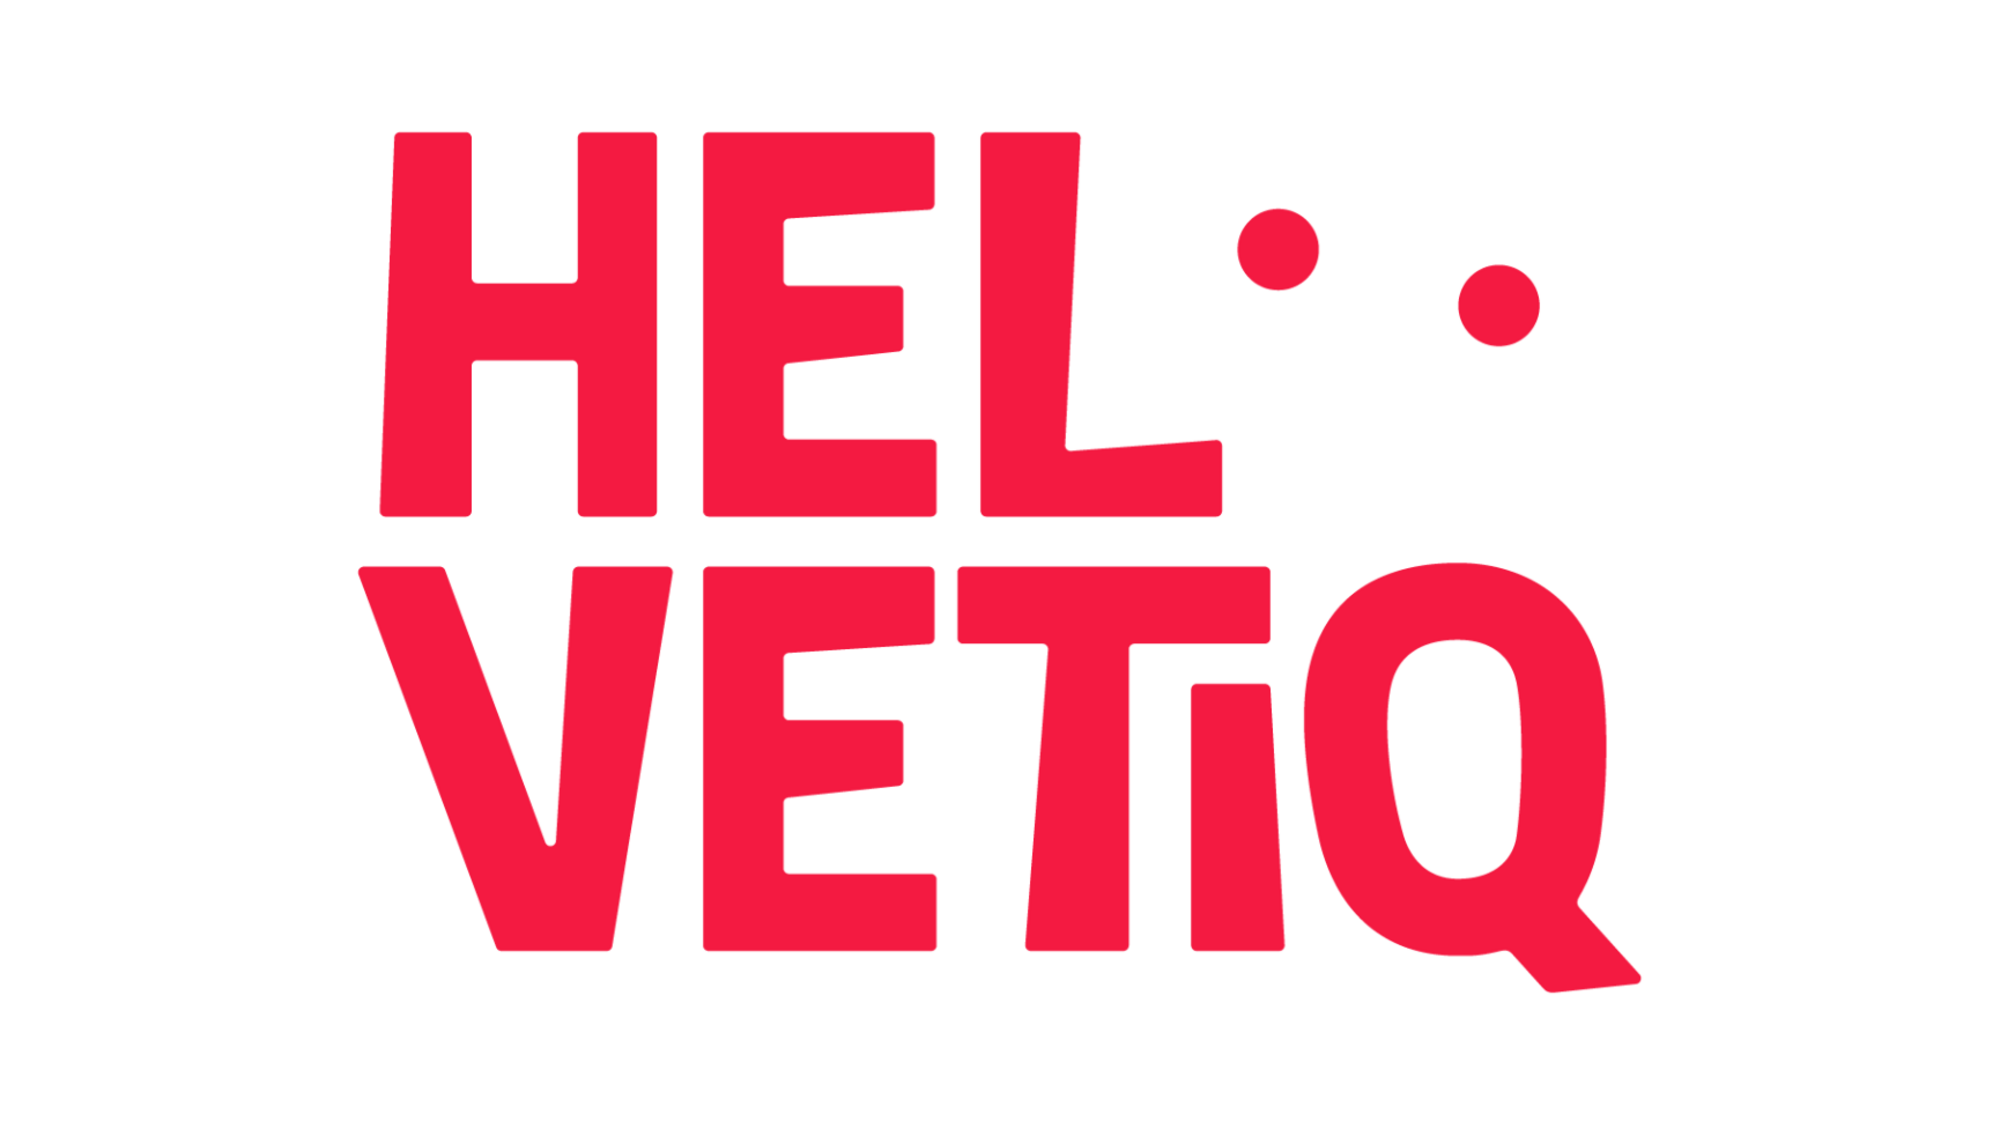 Logo des éditions Helvetiq